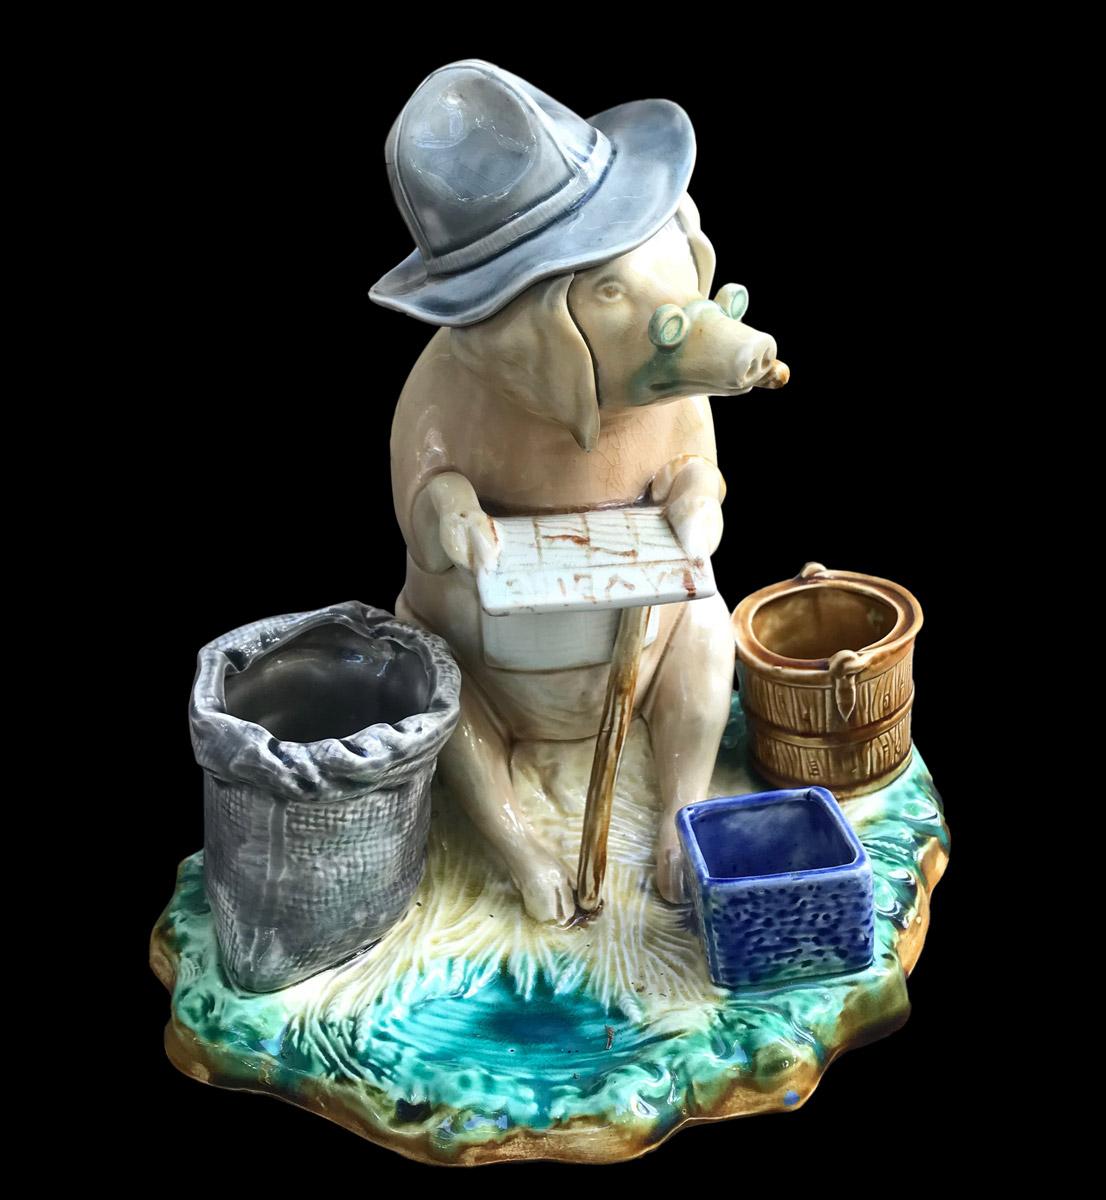 Barbotine-Tabakdose im Onnaing-Stil mit der Darstellung eines sitzenden Schweins mit Stock, das eine Brille und einen blauen Hut trägt, raucht und eine französische Zeitung namens 